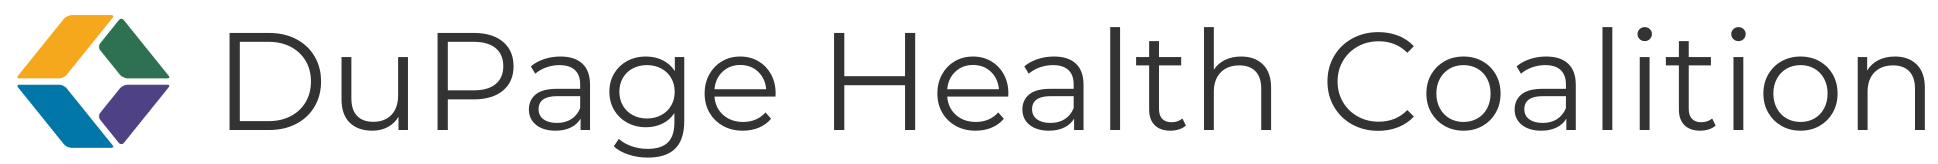 Логотип DuPage Health Coalition Horizontal